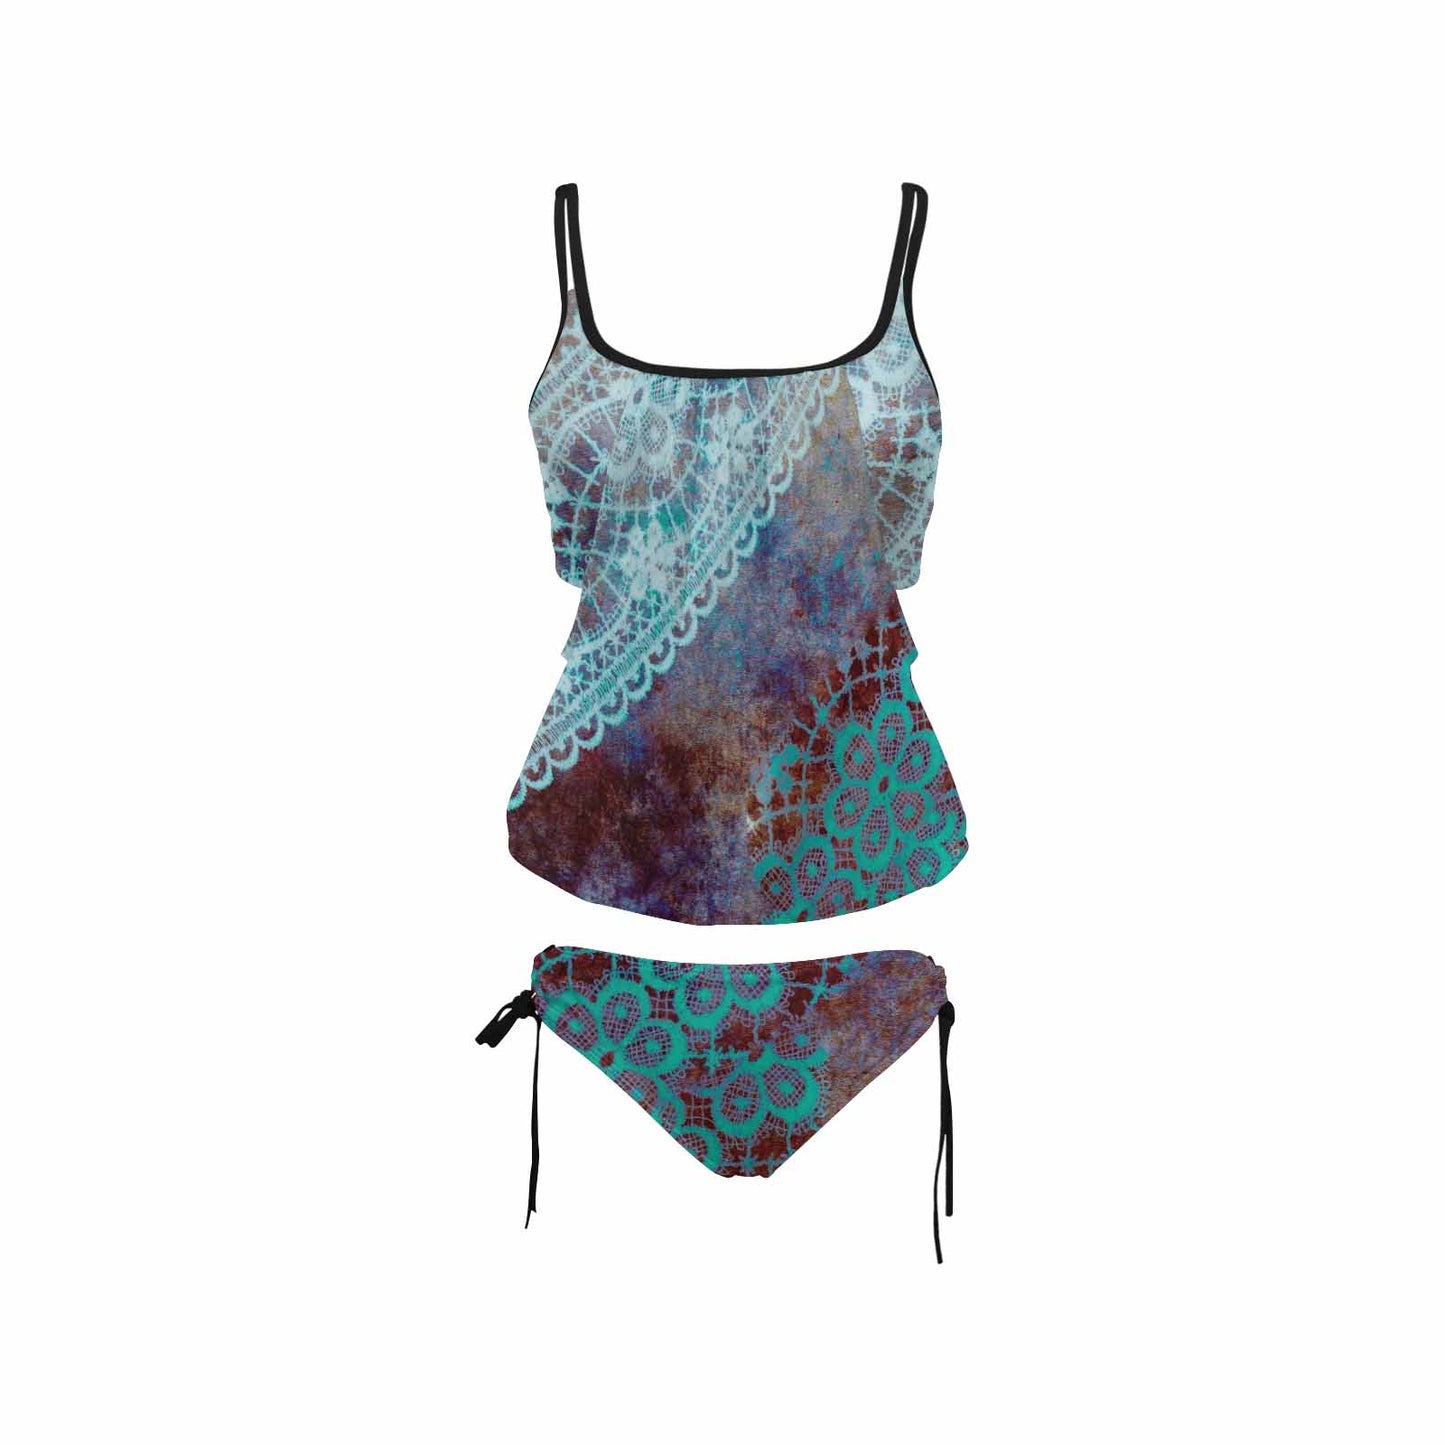 Tankini cover belly swim wear, Printed Victorian lace design 37